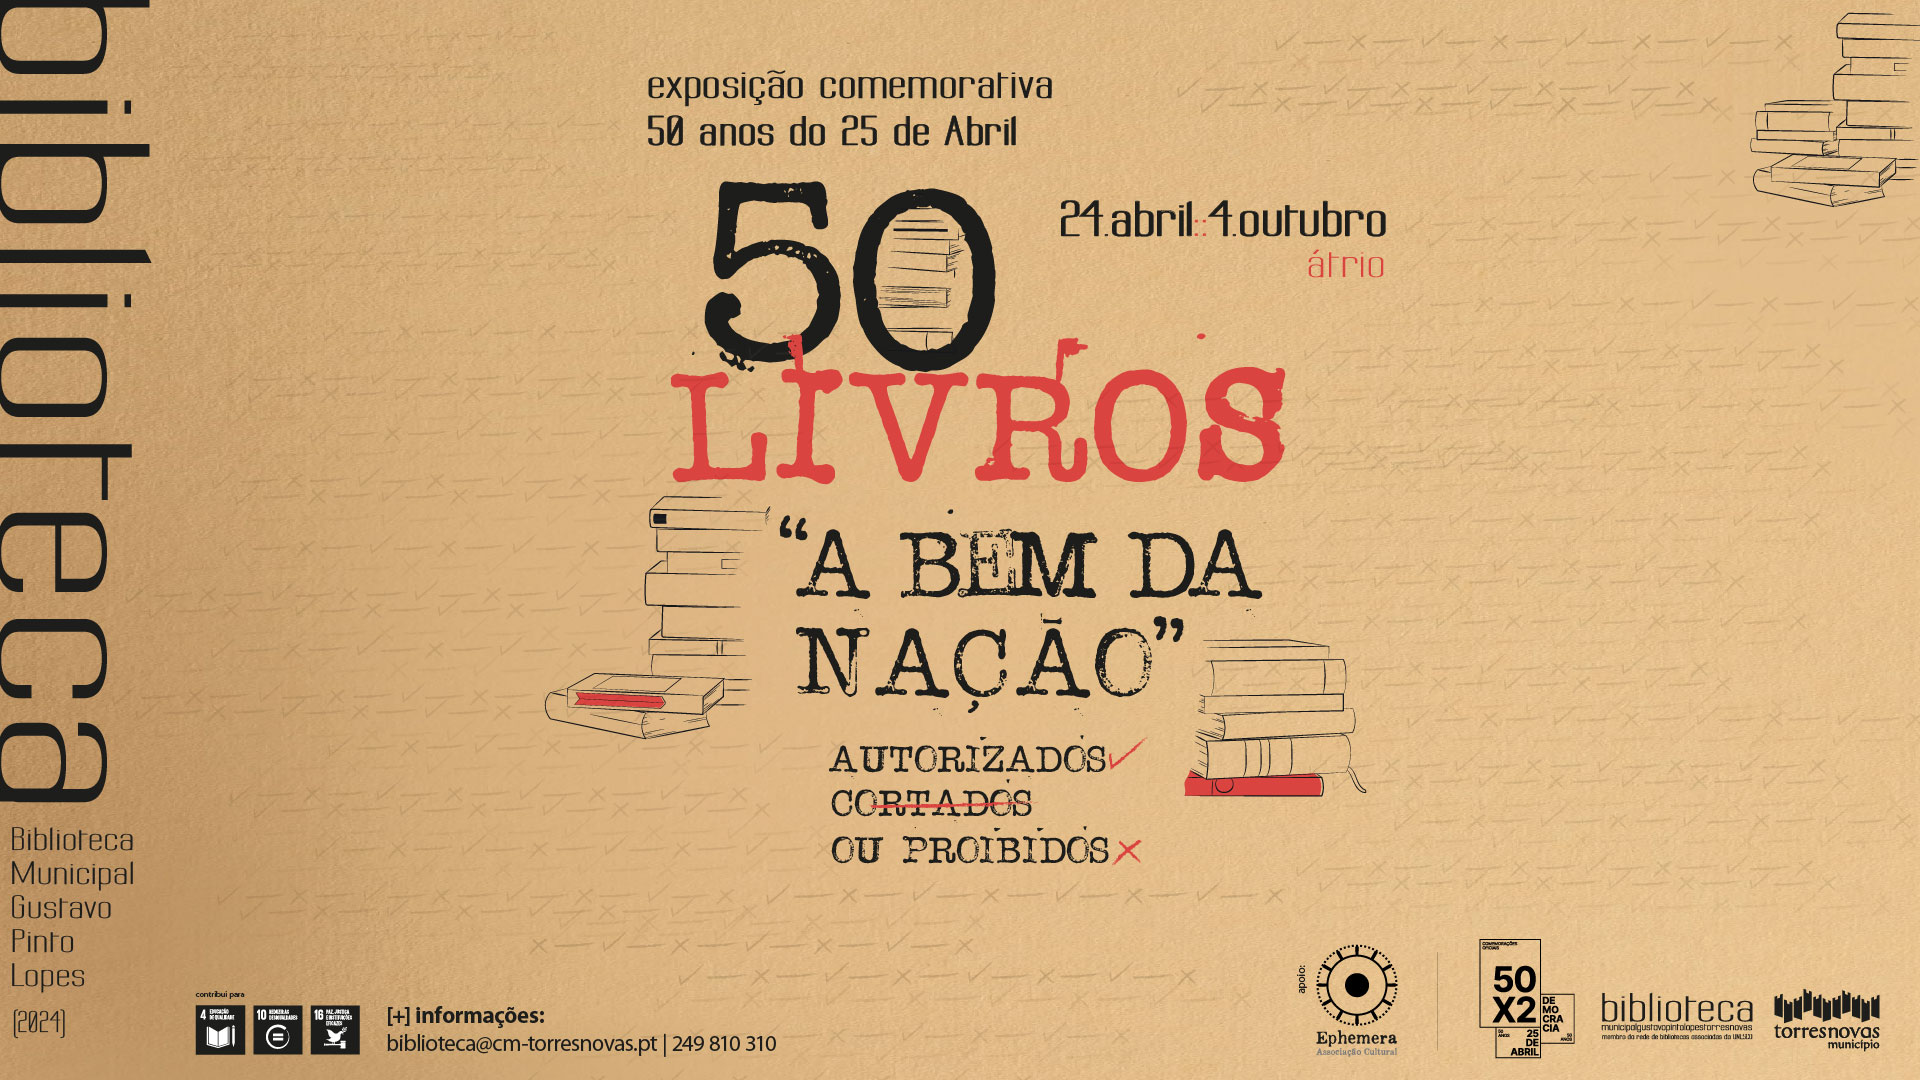 Capa do Evento Exposição // 50 livros “a bem da nação” autorizados, cortados ou proibidos 